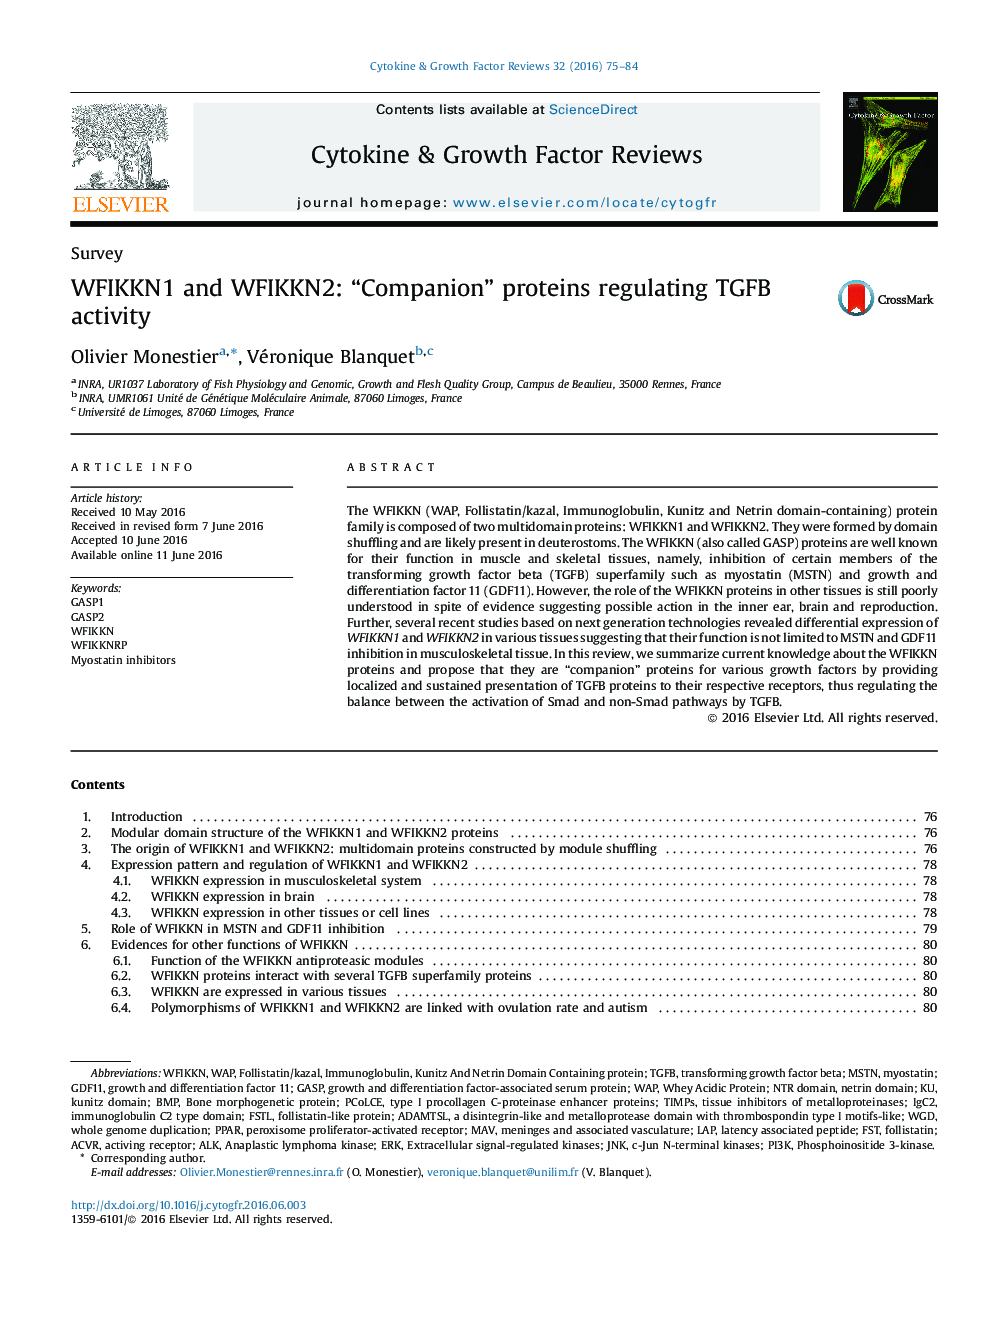 SurveyWFIKKN1 and WFIKKN2: “Companion” proteins regulating TGFB activity